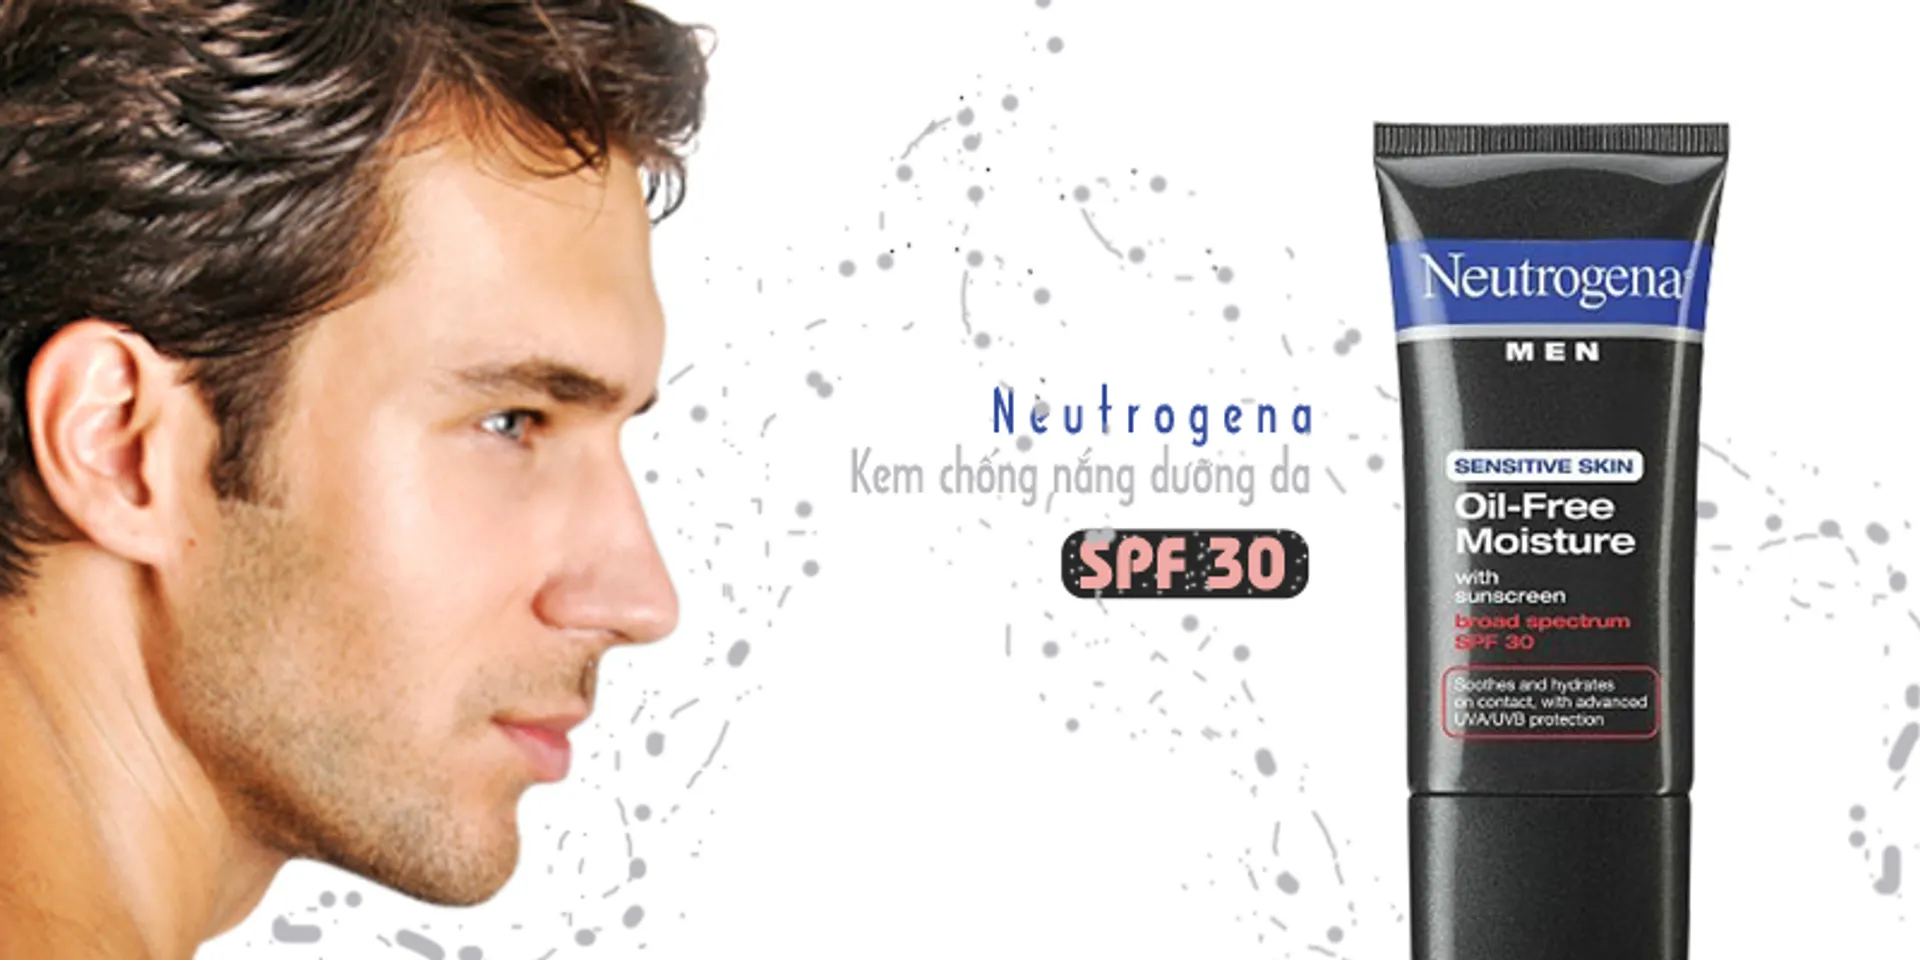 Neutrogena Men Sensitive Skin Oil Free Moisture SPF30 bảo vệ làn da hiệu quả